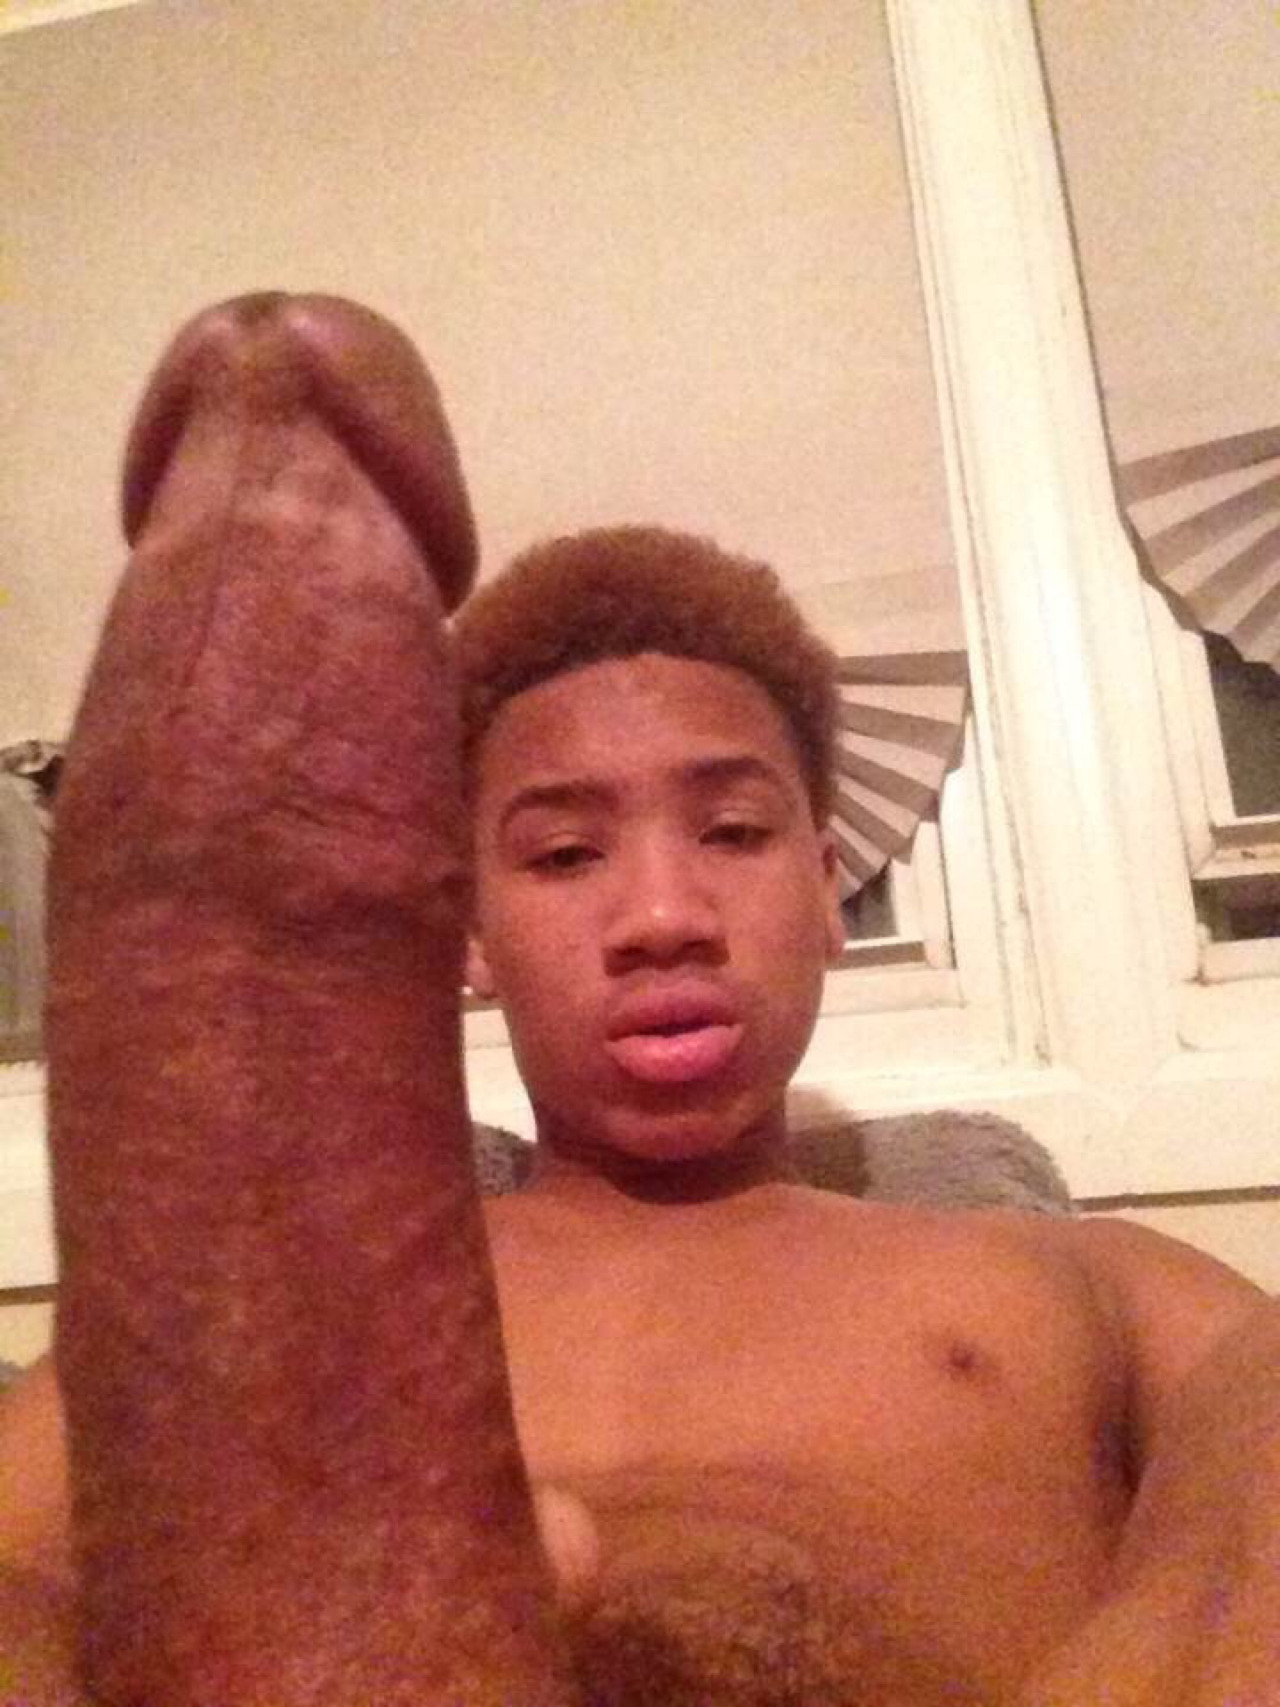 Black teen dick pic